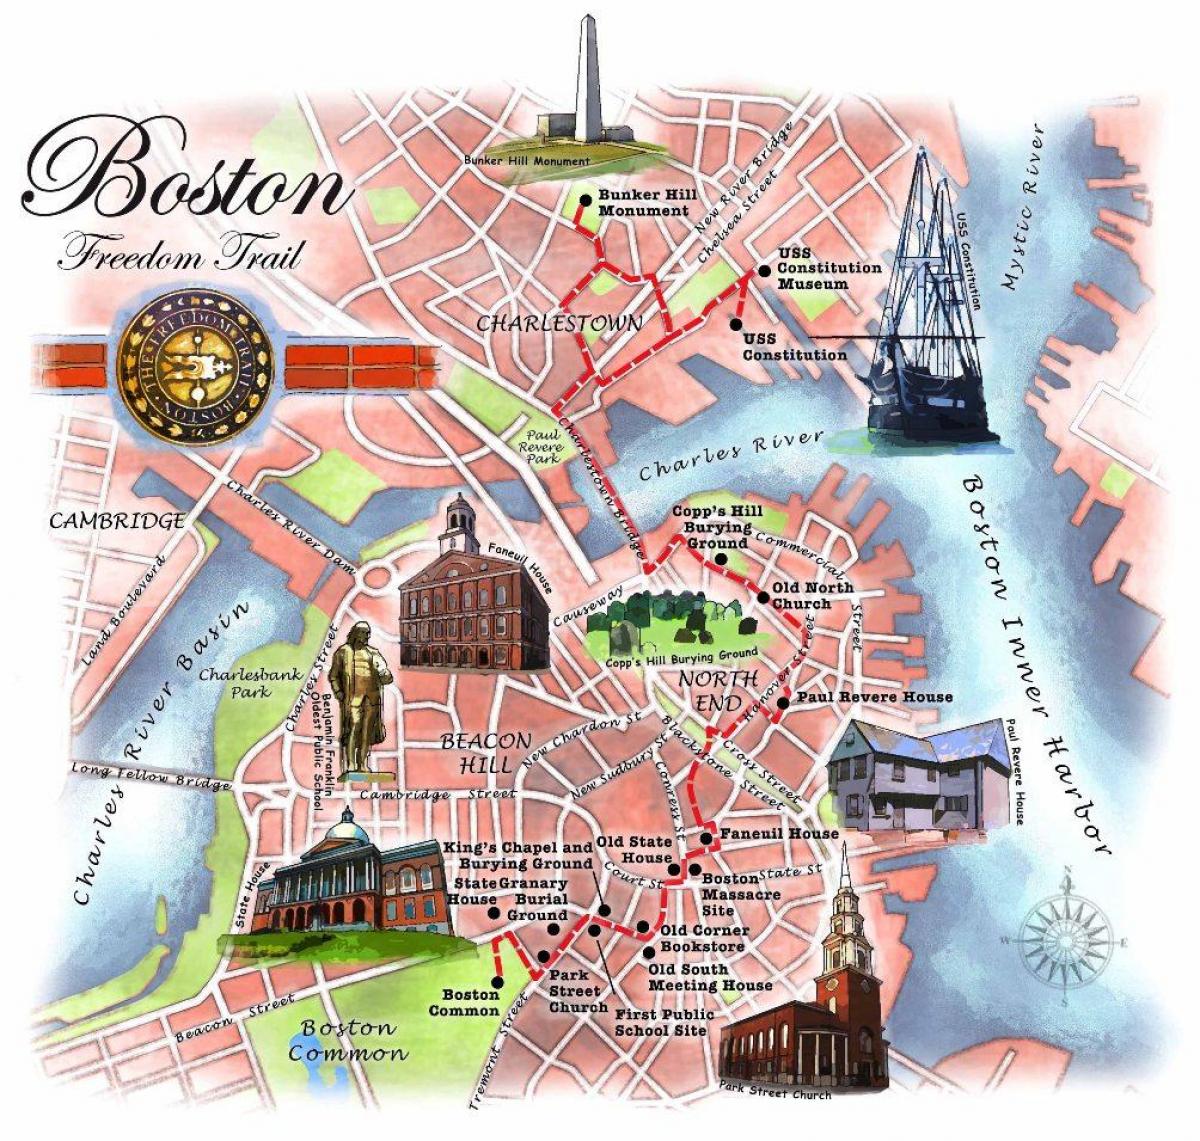 ազատության երթուղին քարտեզի վրա Բոստոնում